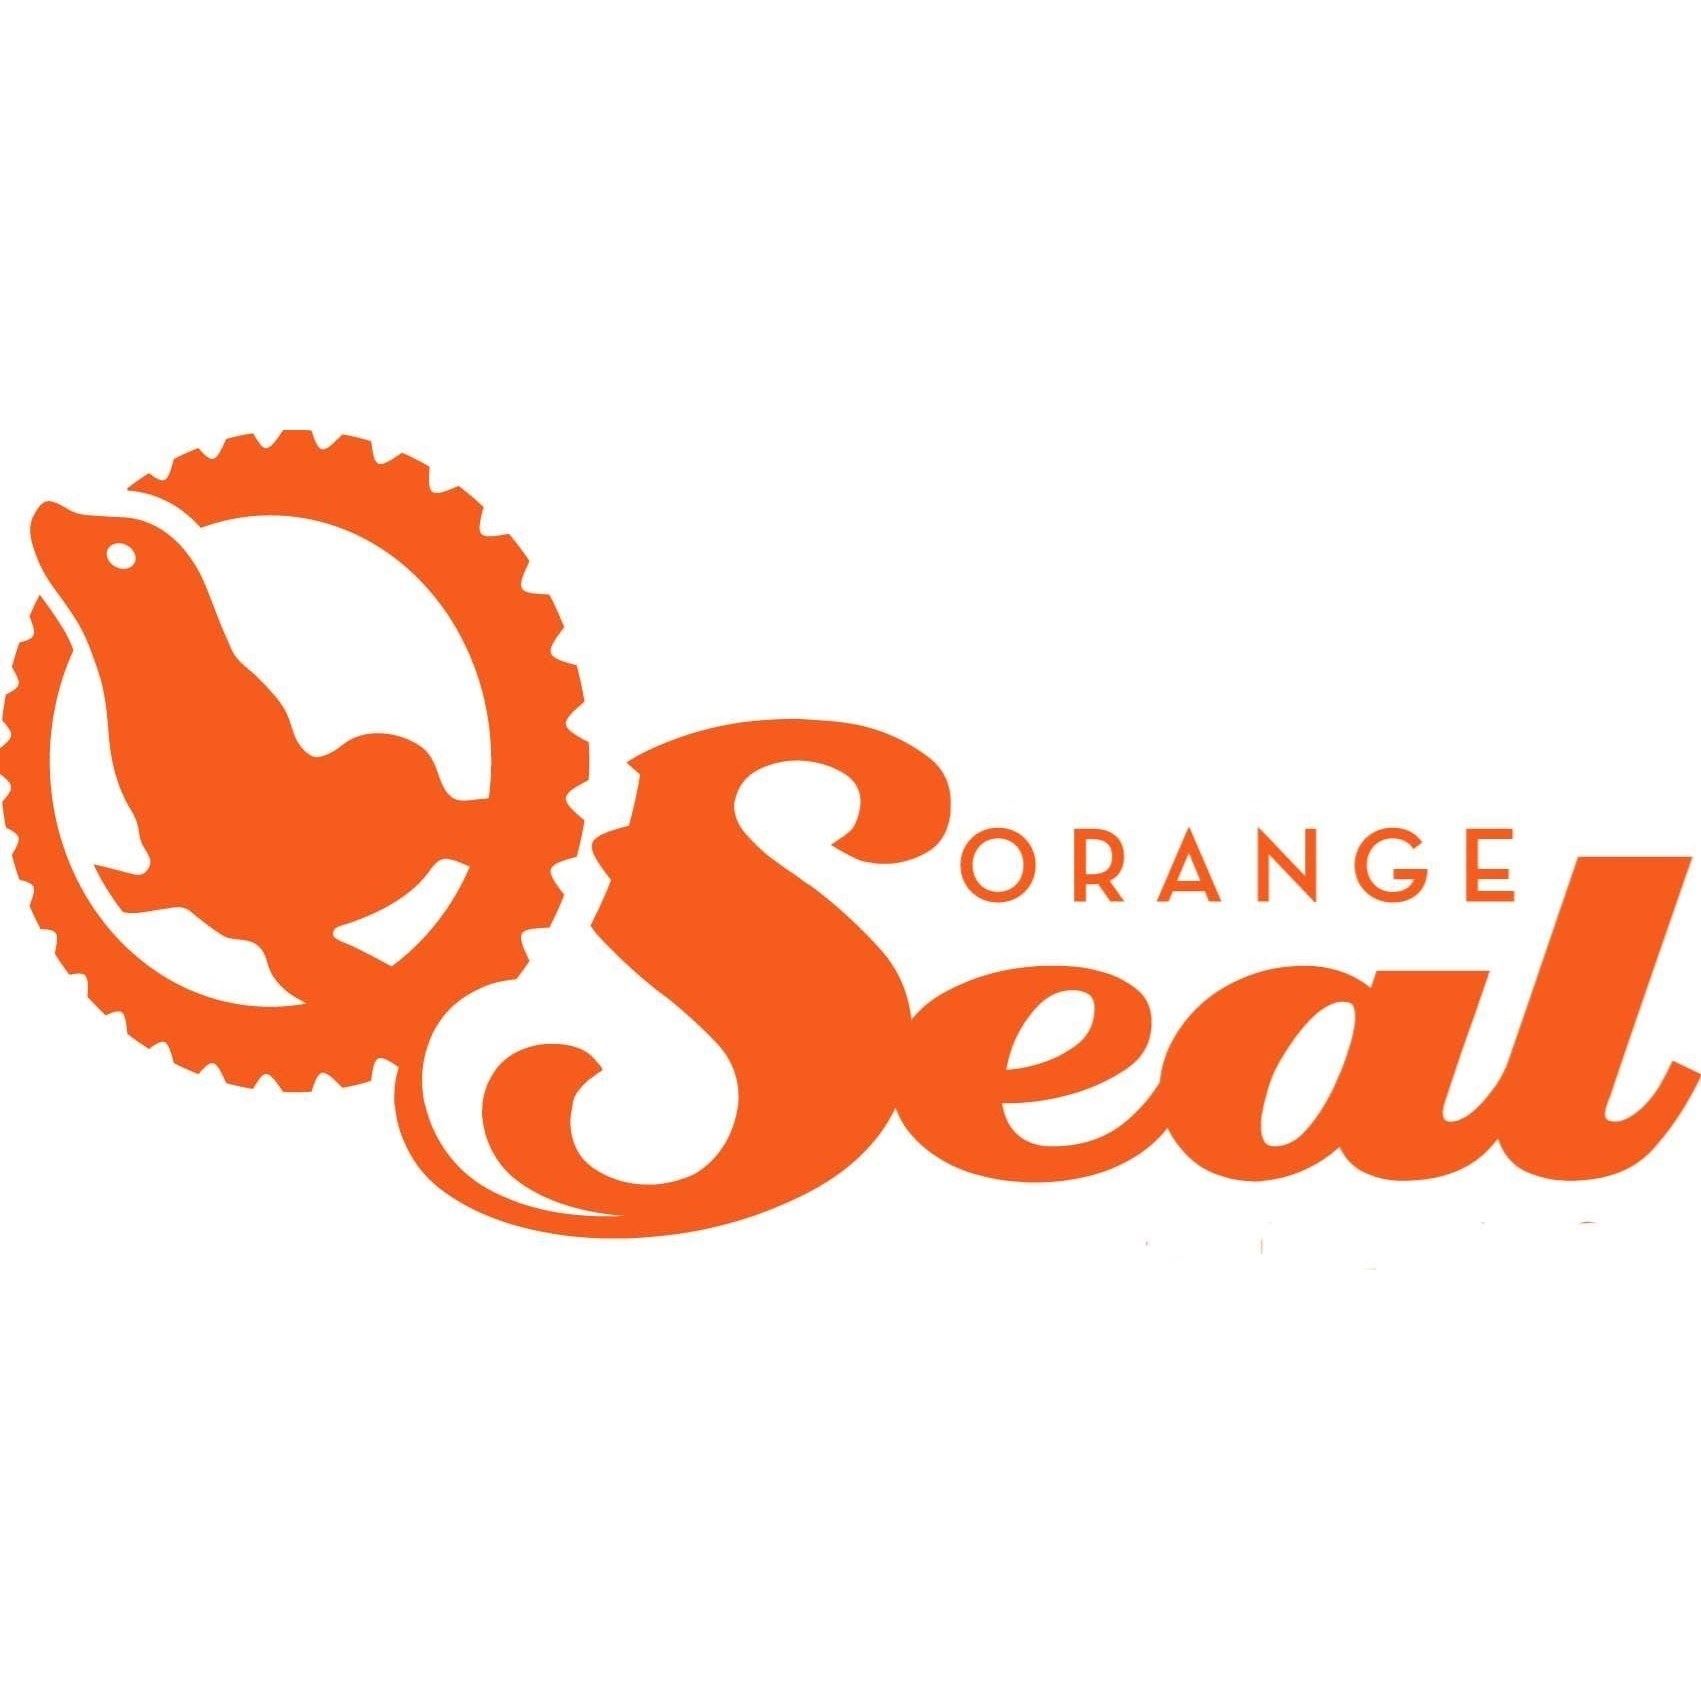 Orange Seal